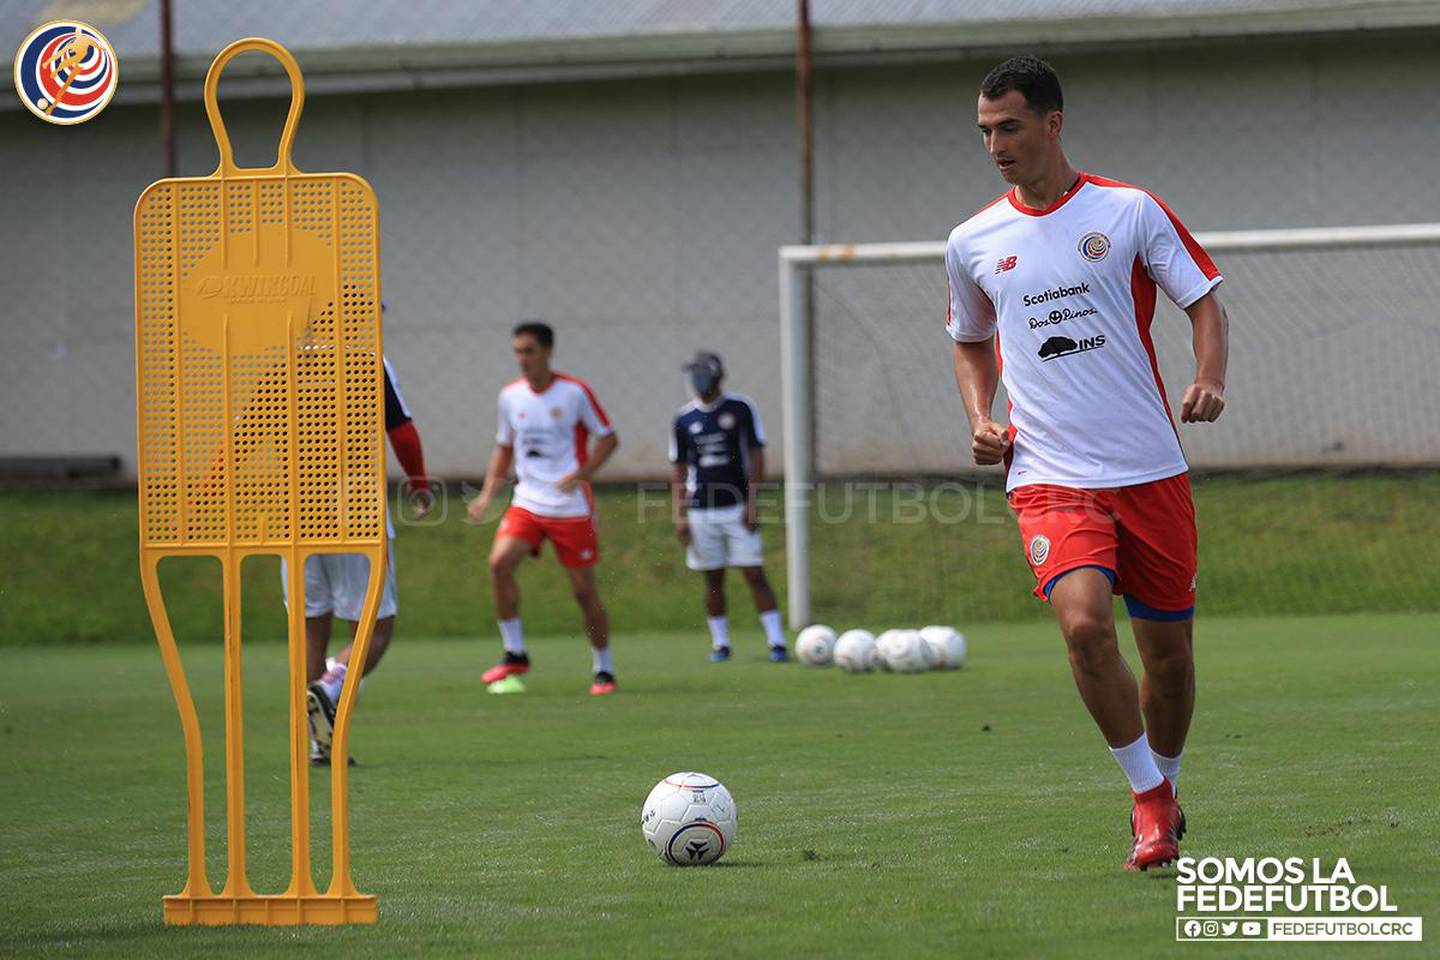 Marco Meneses es un defensa de perfil izquierdo y llega a la Liga ante la lesión de Junior Díaz. Fotografía: Fedefútbol